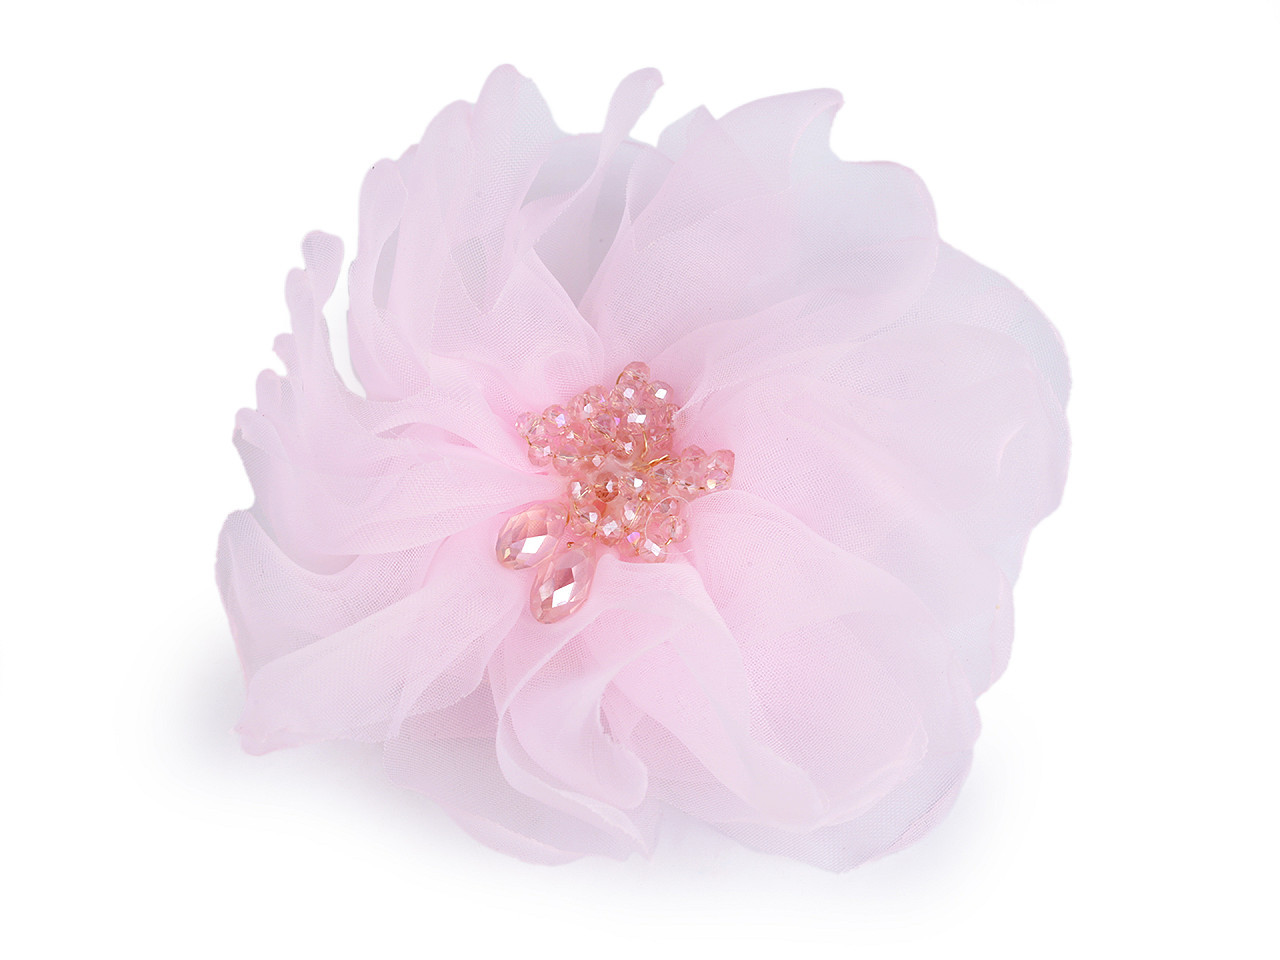 Brož květ s broušenými korálky Ø10 cm v krabičce, barva 5 růžová nejsv.